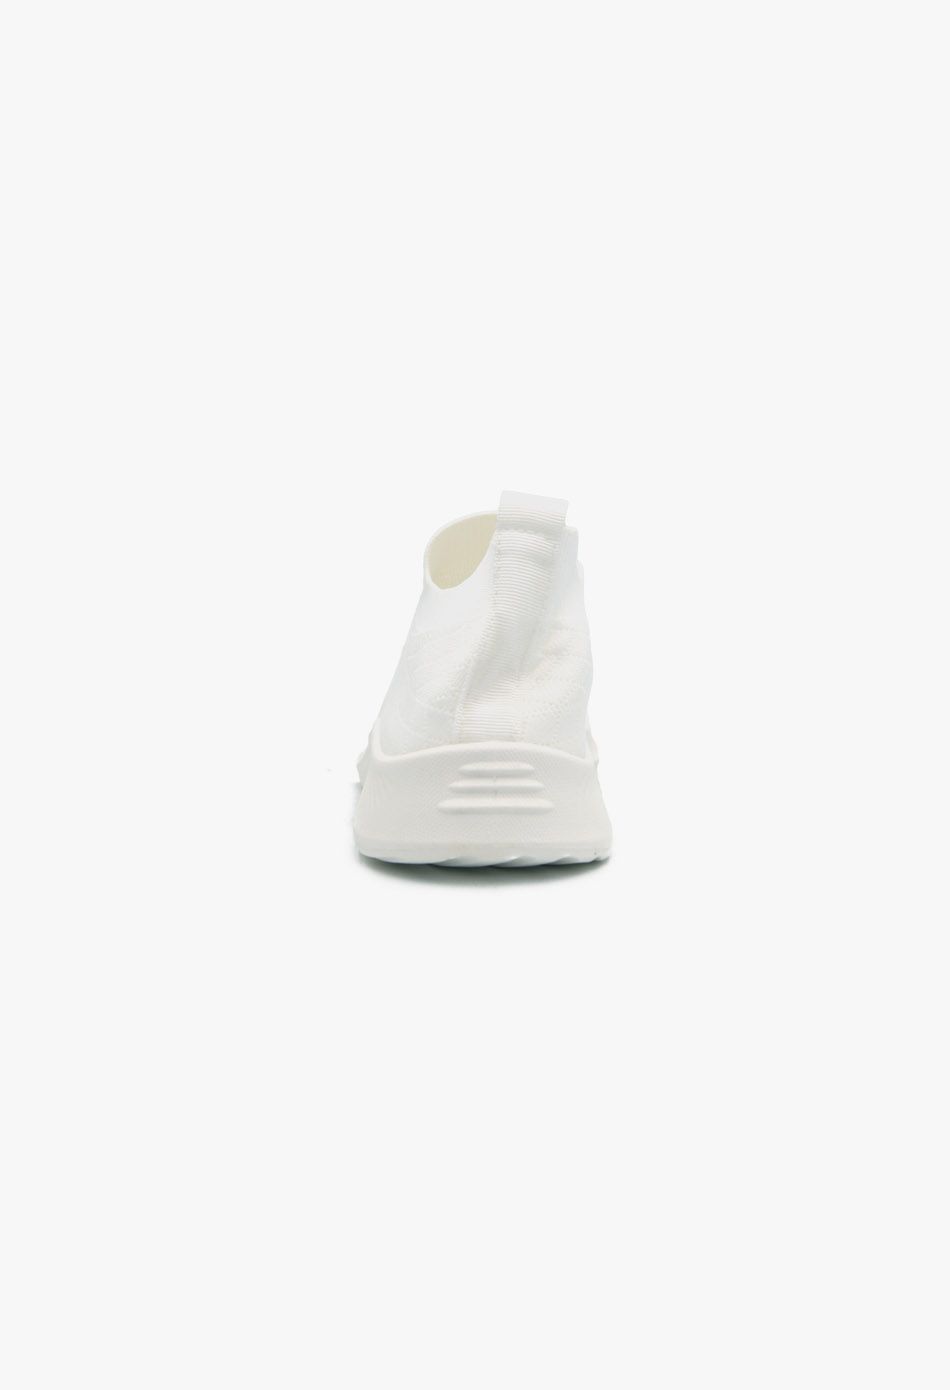 Γυναικεία sneakers τύπου κάλτσα Λευκό / RA8003-white Γυναικεία Αθλητικά και Sneakers joya.gr